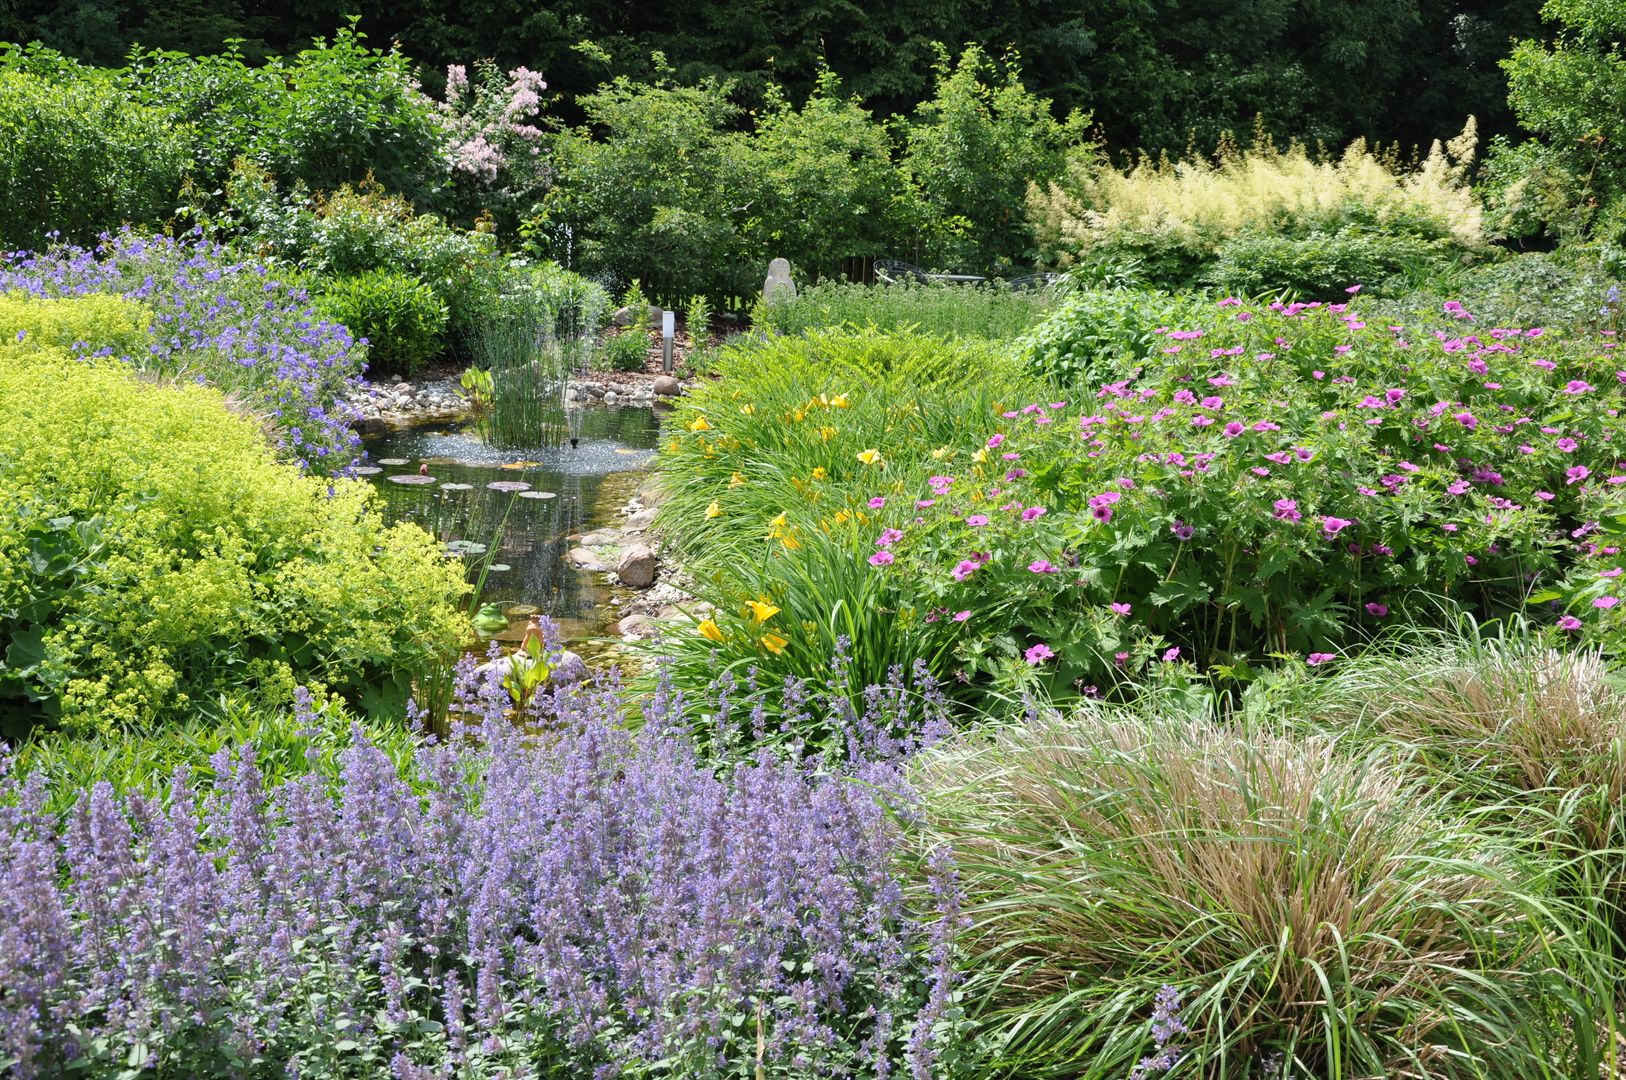 Stauden statt Rasen, Ambiente Gartengestaltung Ambiente Gartengestaltung Country style garden